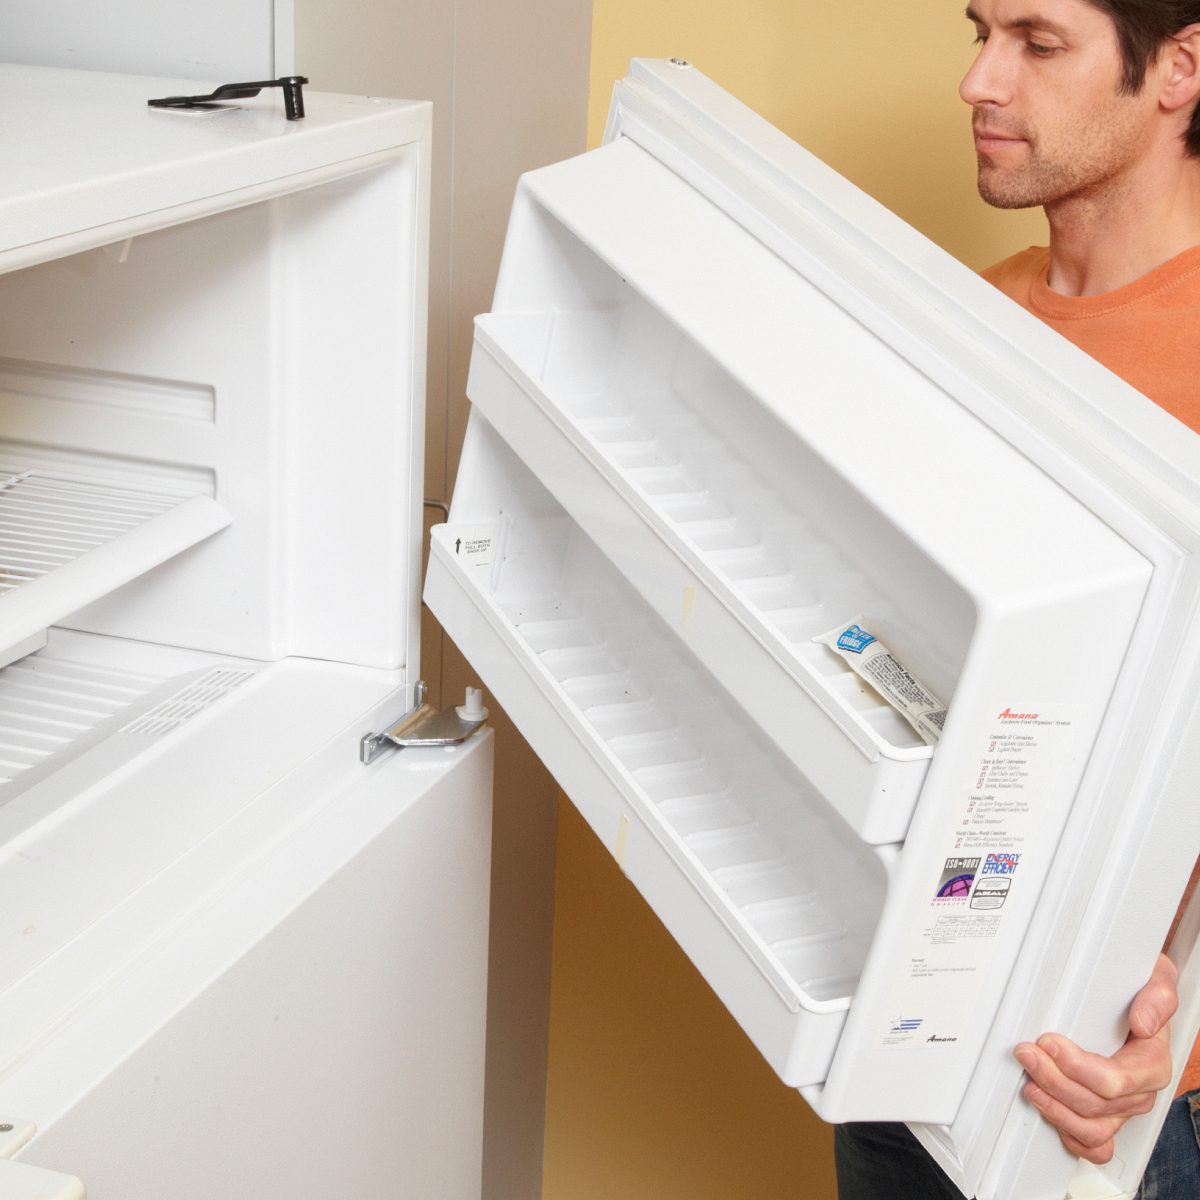 How to Reverse a Refrigerator Door